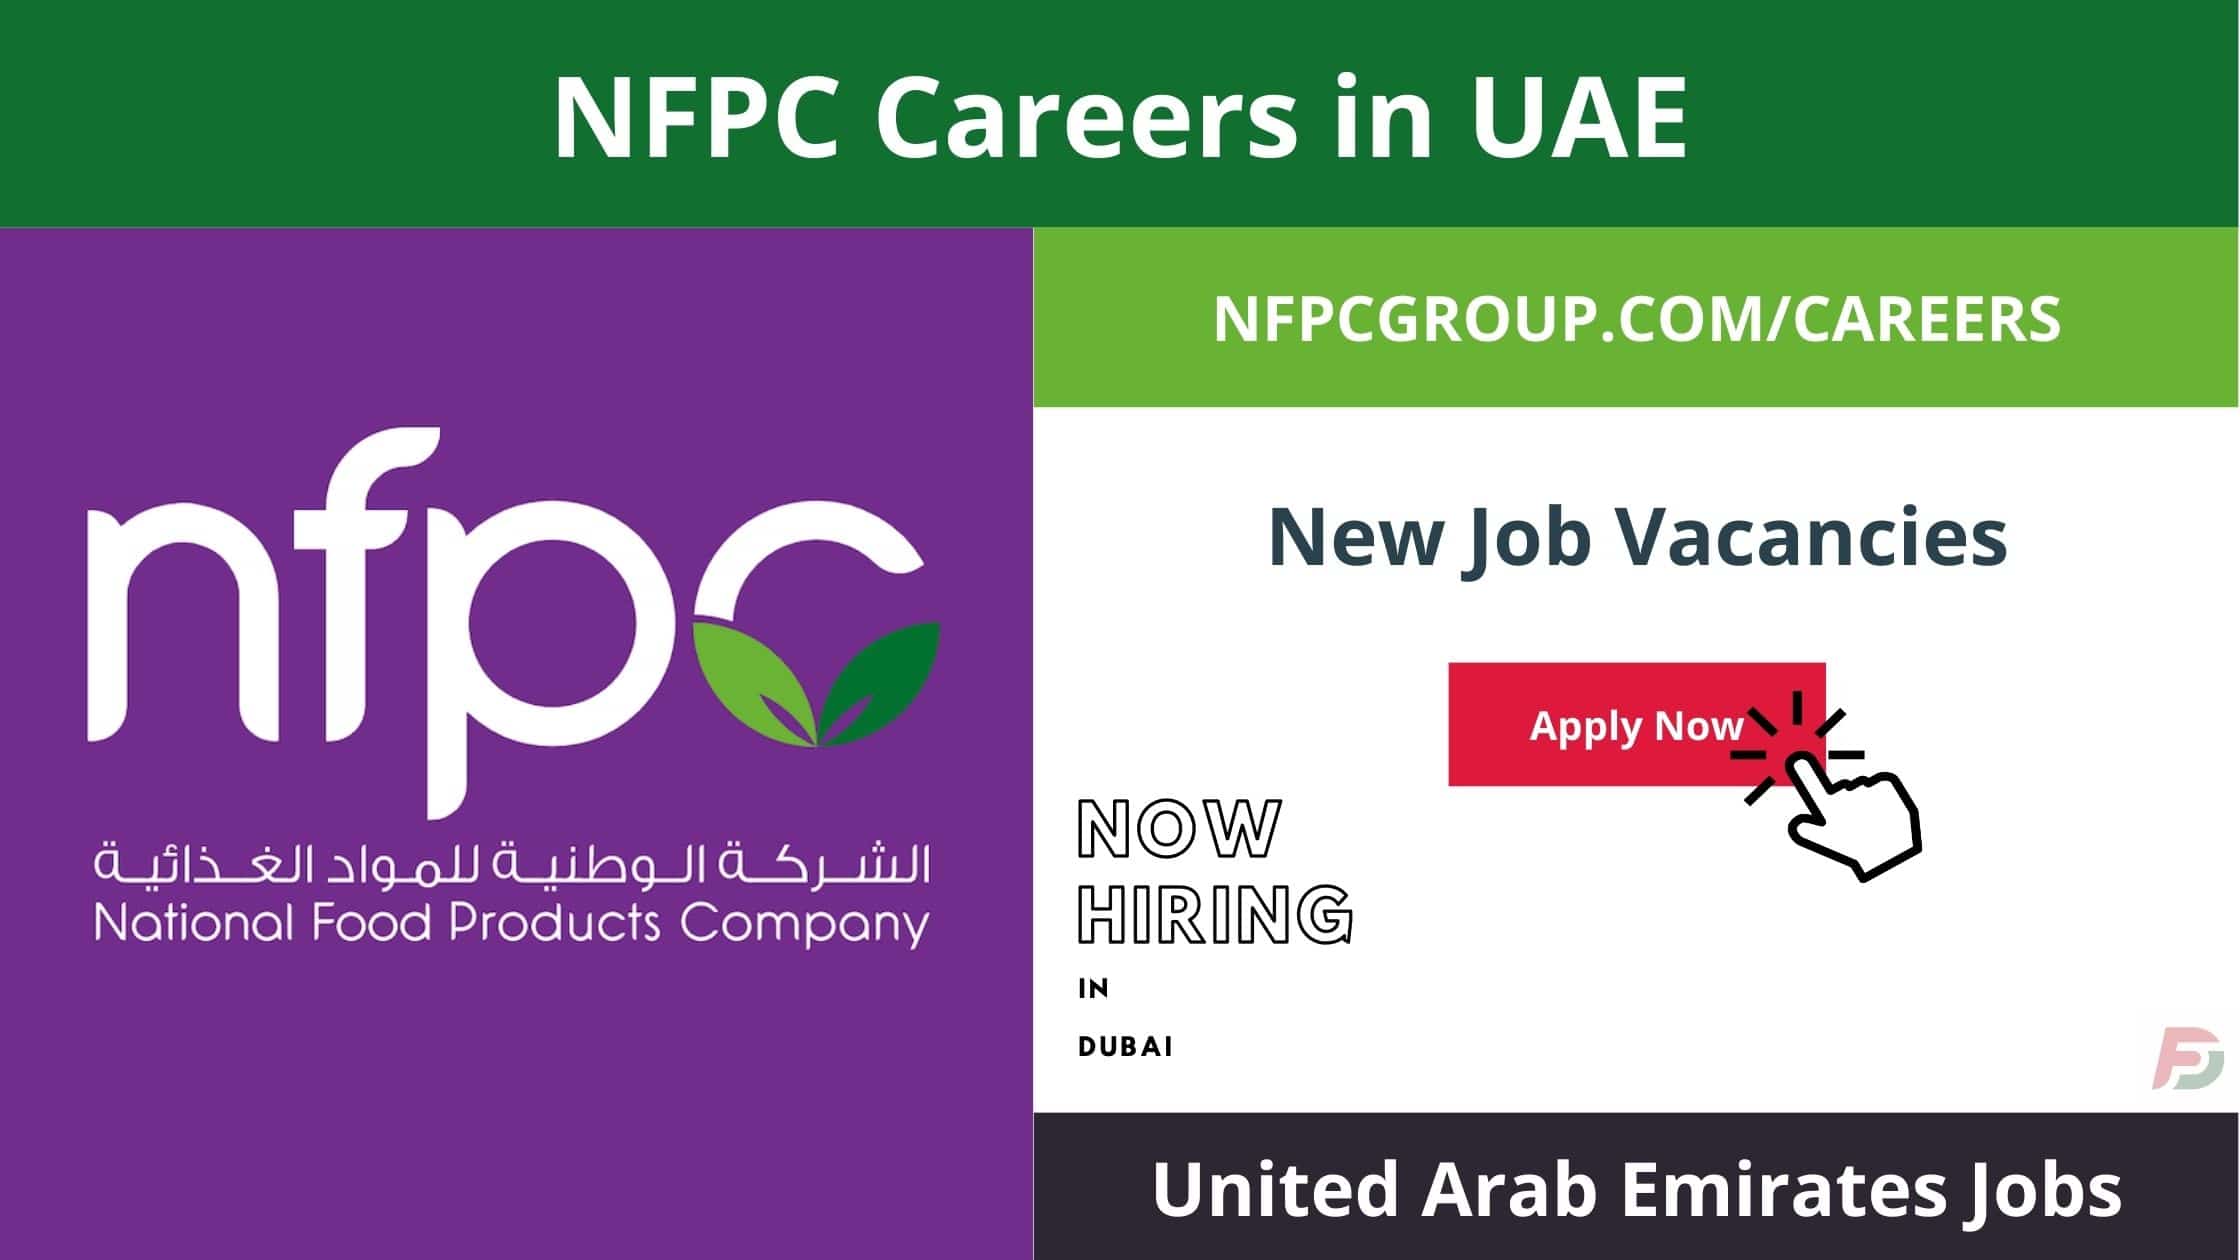 NFPC Careers in UAE